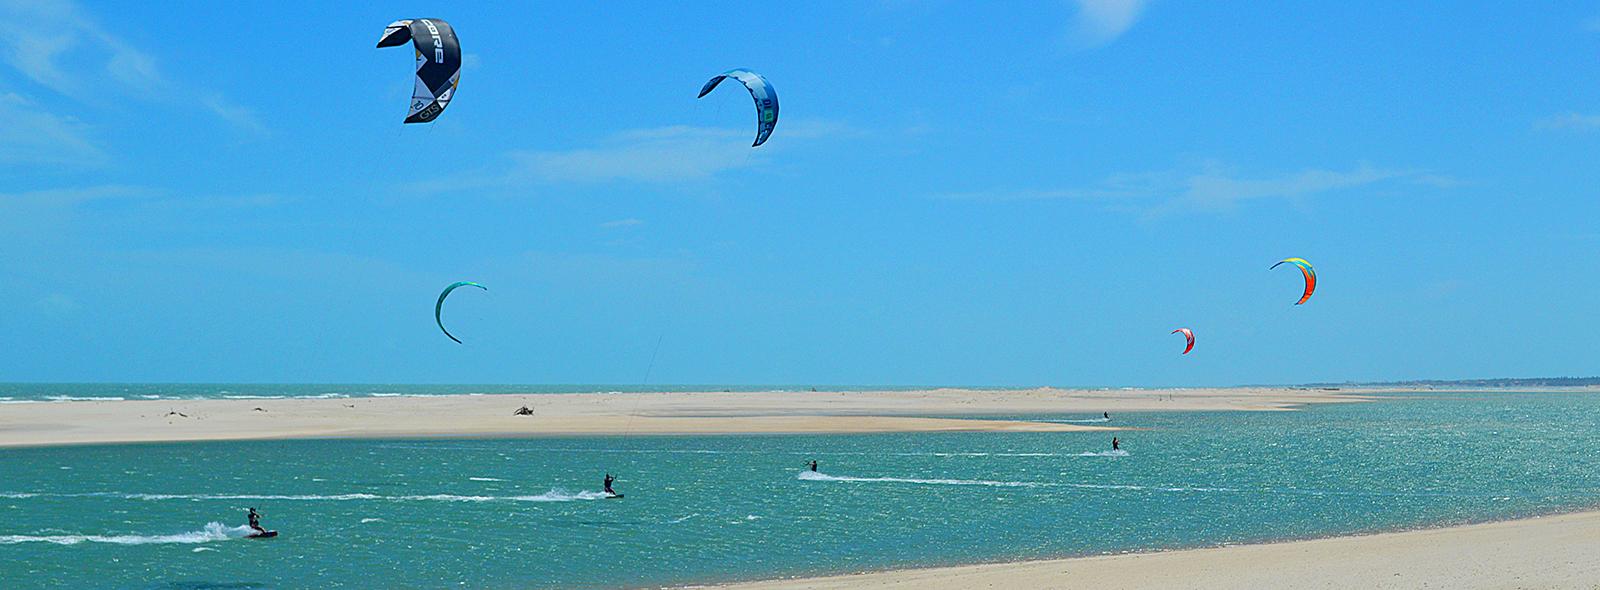 Bienvenue sur le spot de kitesurf de Parajuru au Brésil pour votre prochain séjour